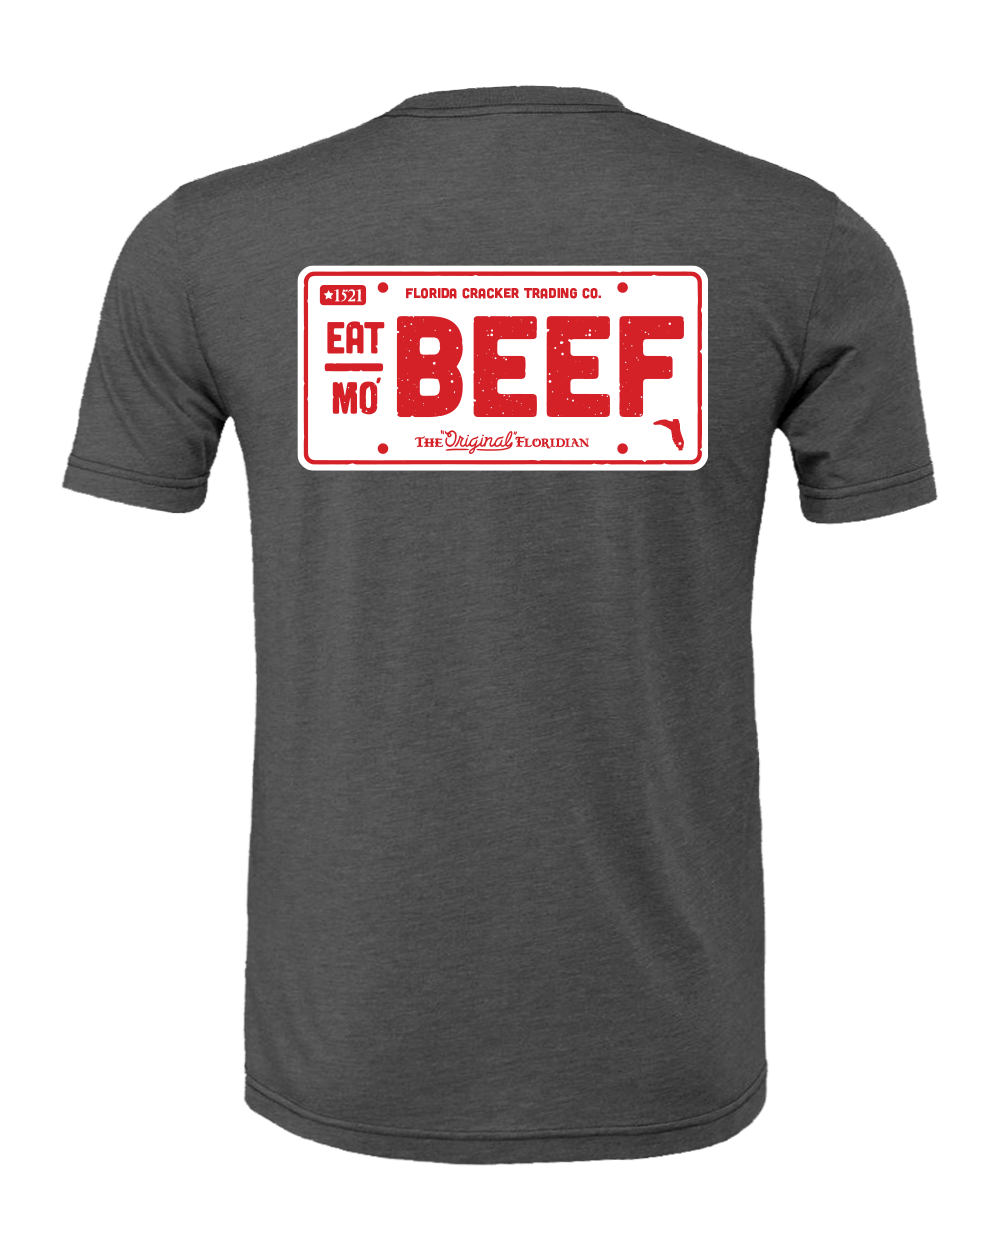 EAT MO' BEEF SHIRT S/S - DARK GRAY